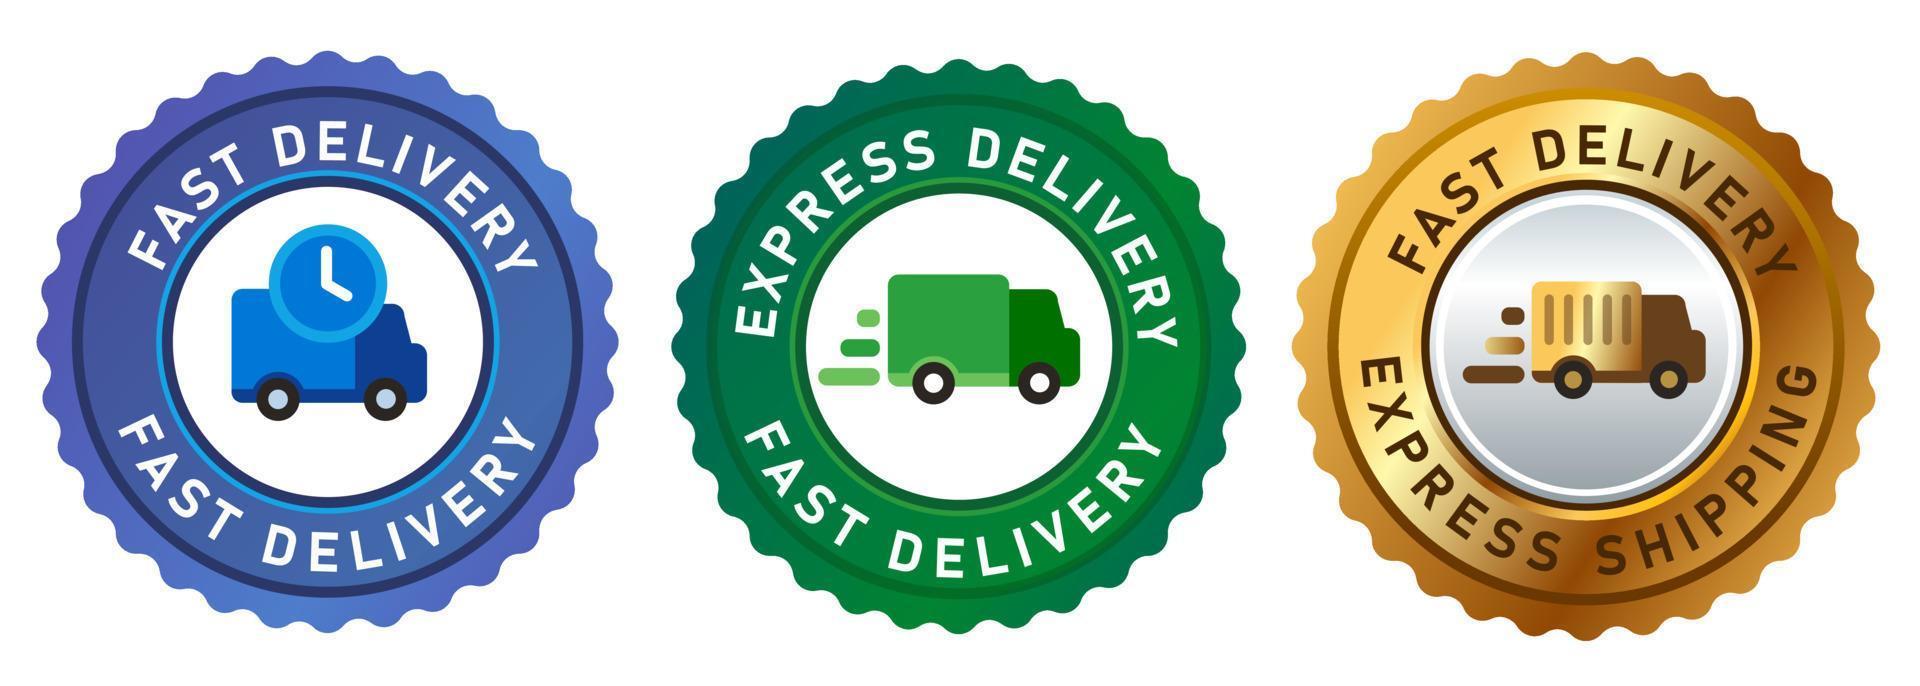 fast delivery express icon van truck emblem stamp badges sticker in blue green golden vector illustration